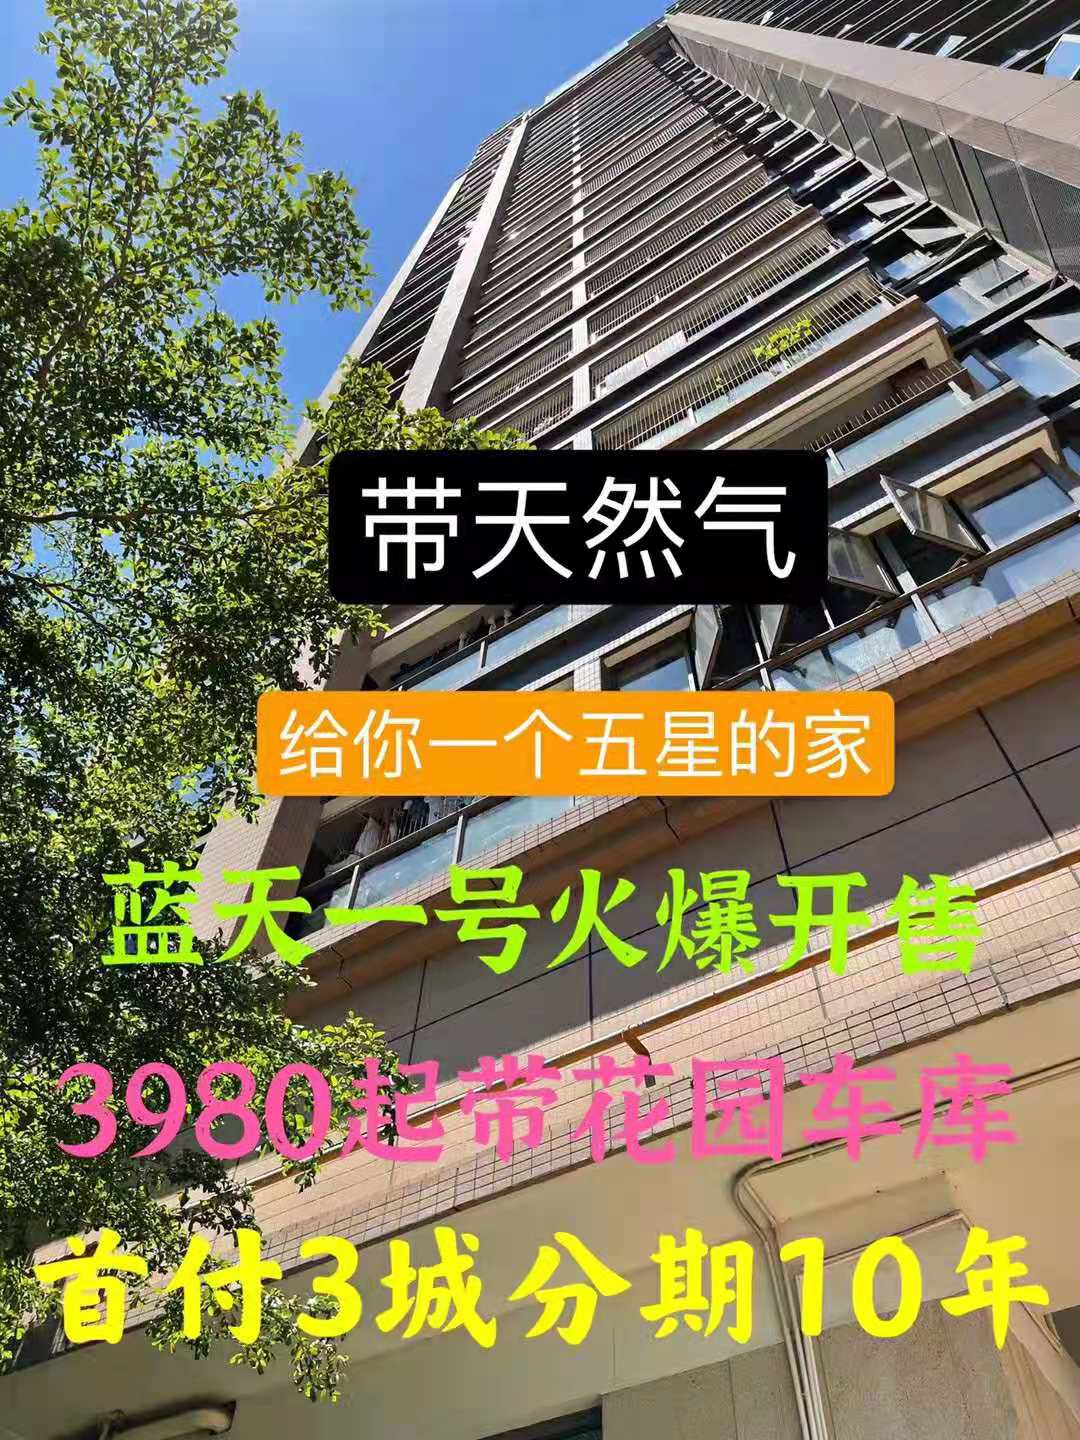 长安滨海新区三栋花园小区【蓝天一号】超大飘窗带停车场均价48